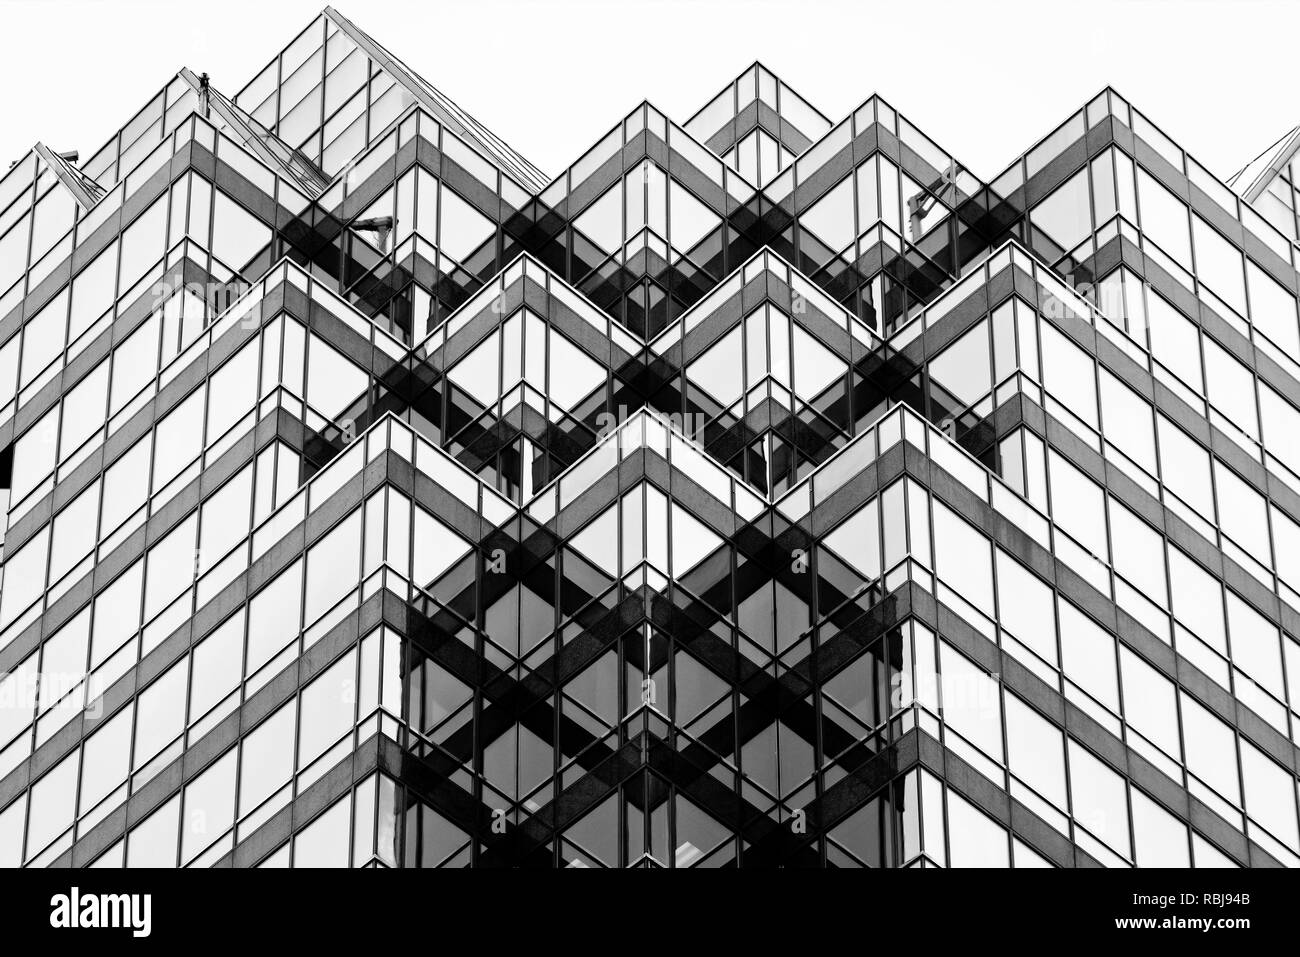 Architektonische Details der Queen Street East Tower in der Innenstadt von Toronto, Kanada Stockfoto